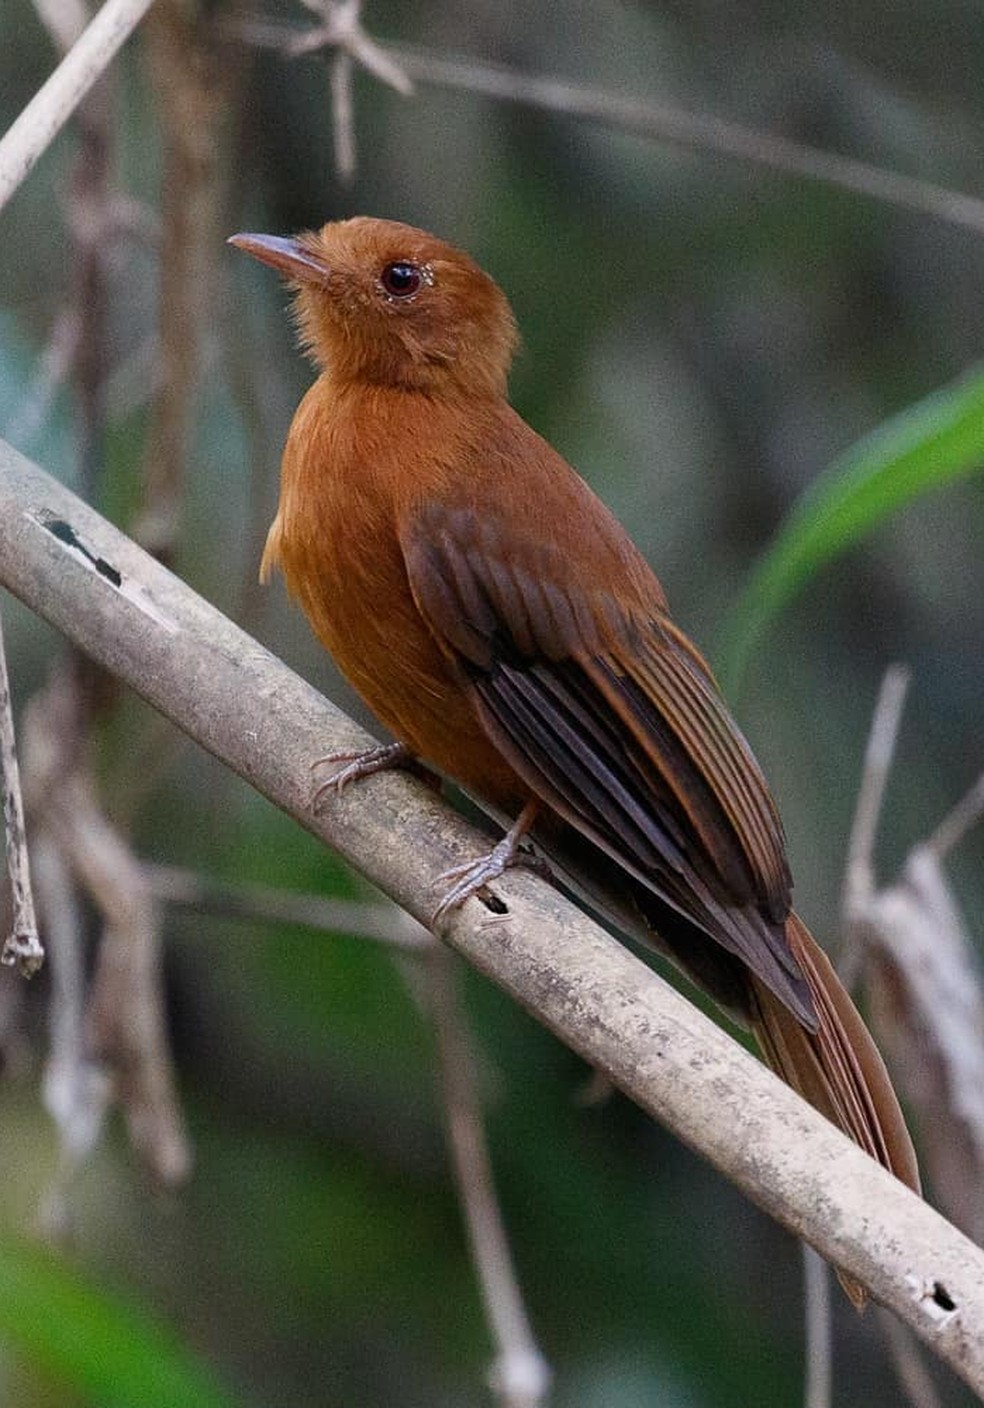 Flautim-rufo foi registrado pela observadora e fotógrafa de aves Silvia Linhares em Rio Branco (AC) — Foto: Silvia Linhares/Arquivo Pessoal